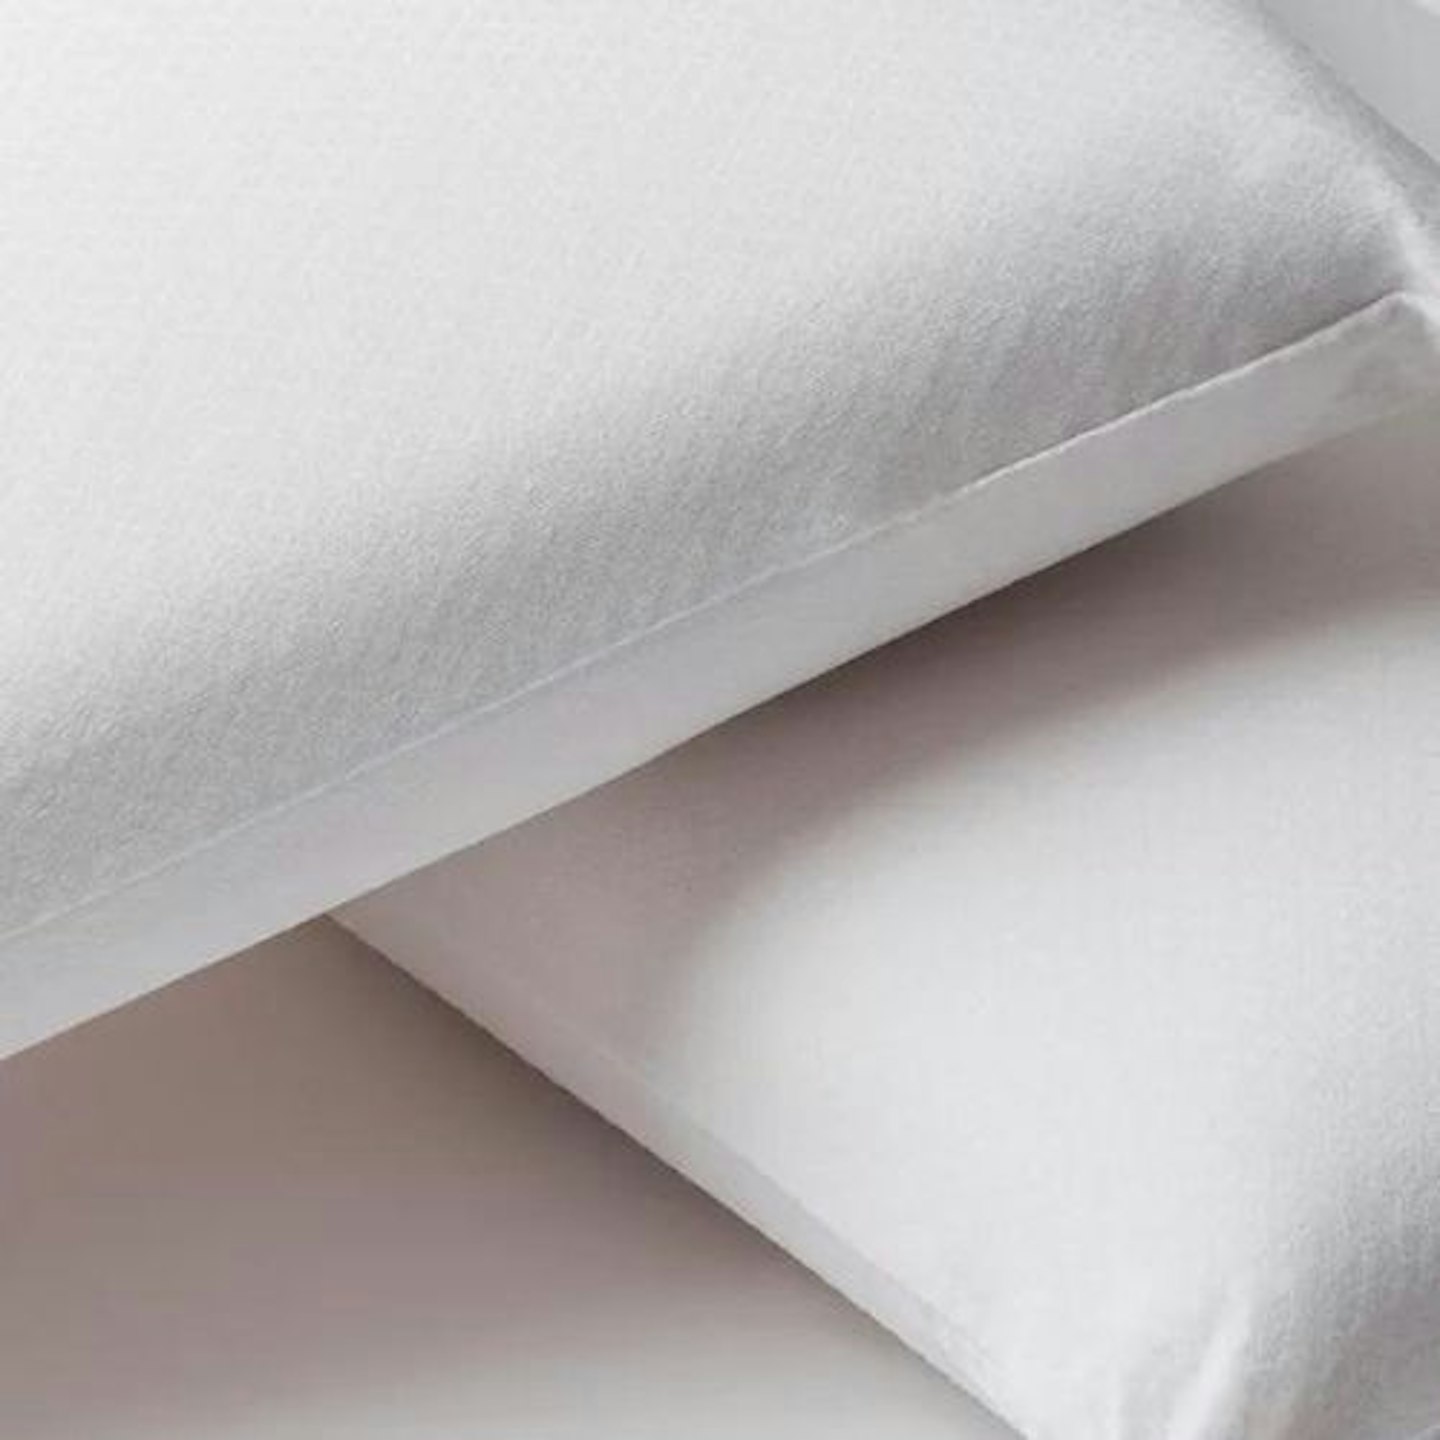 Best cooling pillows: Velfont Temperature Regulating Pillow